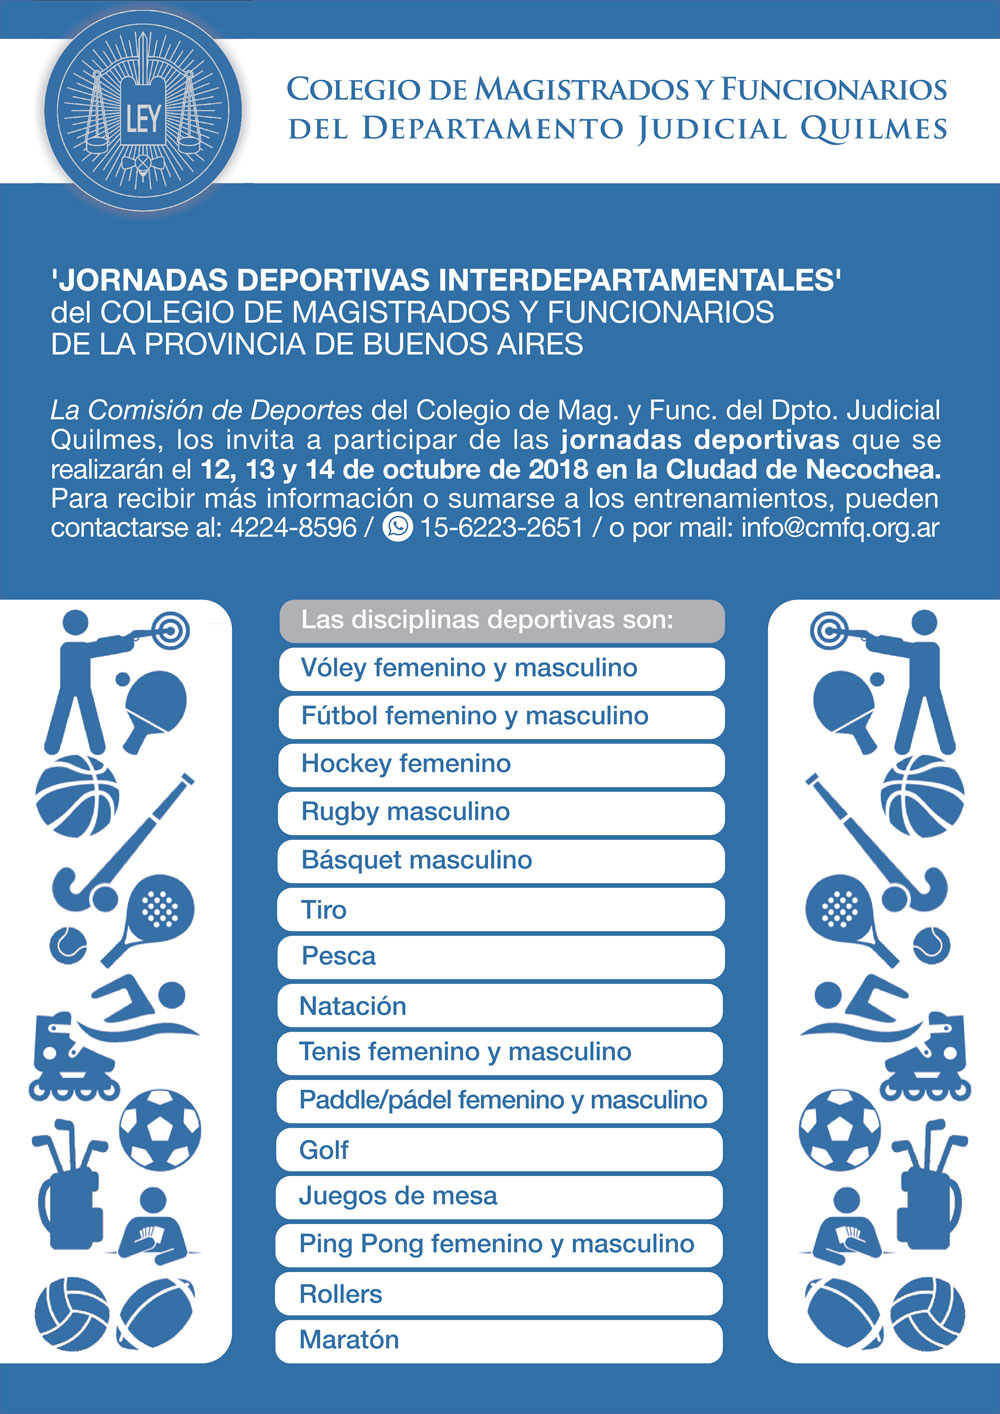 JORNADAS DEPORTIVAS INTERDEPARTAMENTALES